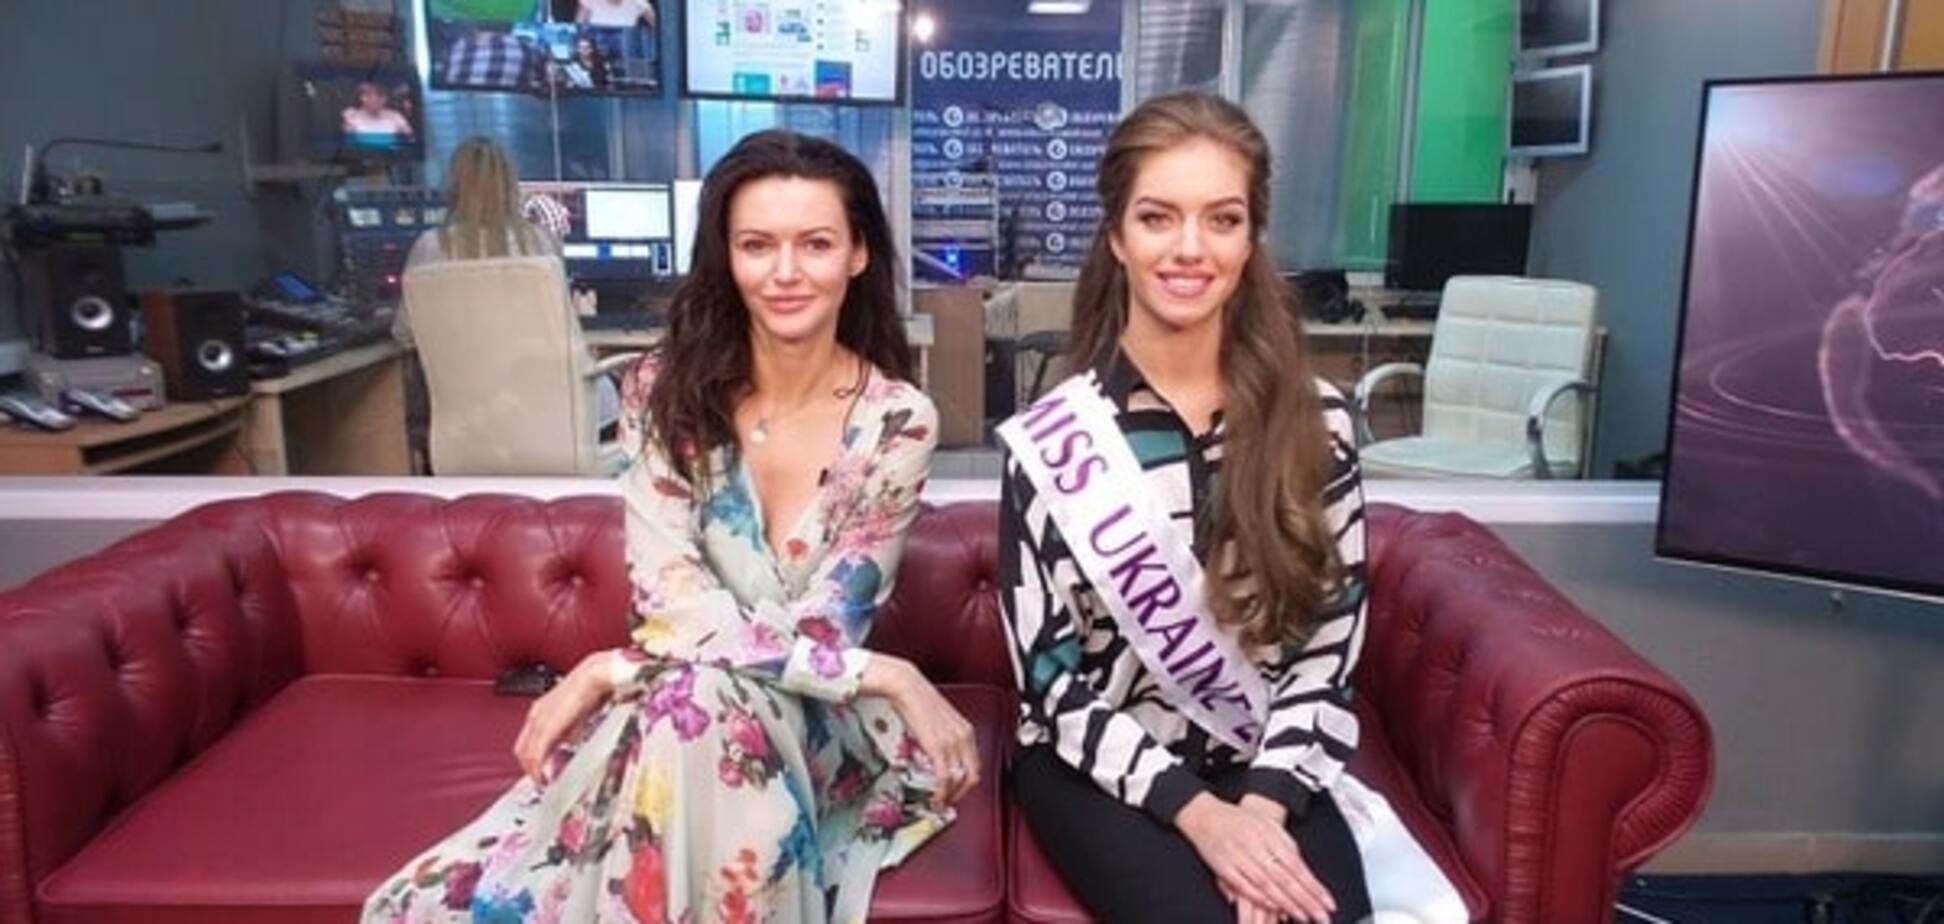 'Міс Україна 2016' Олександра Кучеренко планує підкорити журі 'Міс Світу' танцем